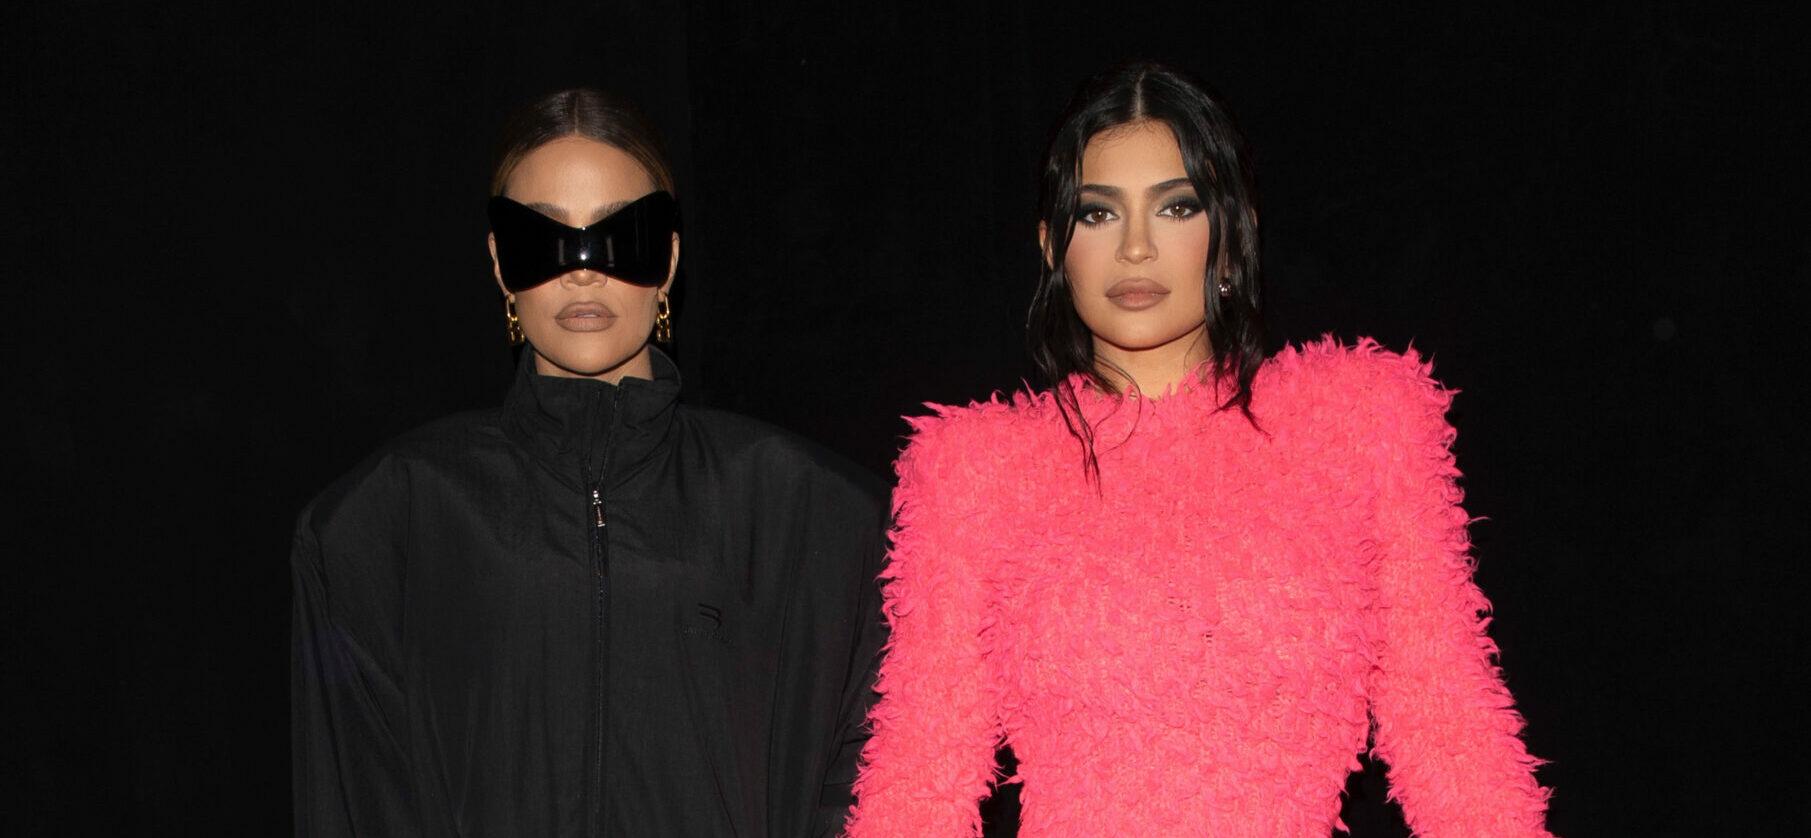 Kylie Jenner and Khloe Kardashian look chic at Balenciaga in Paris